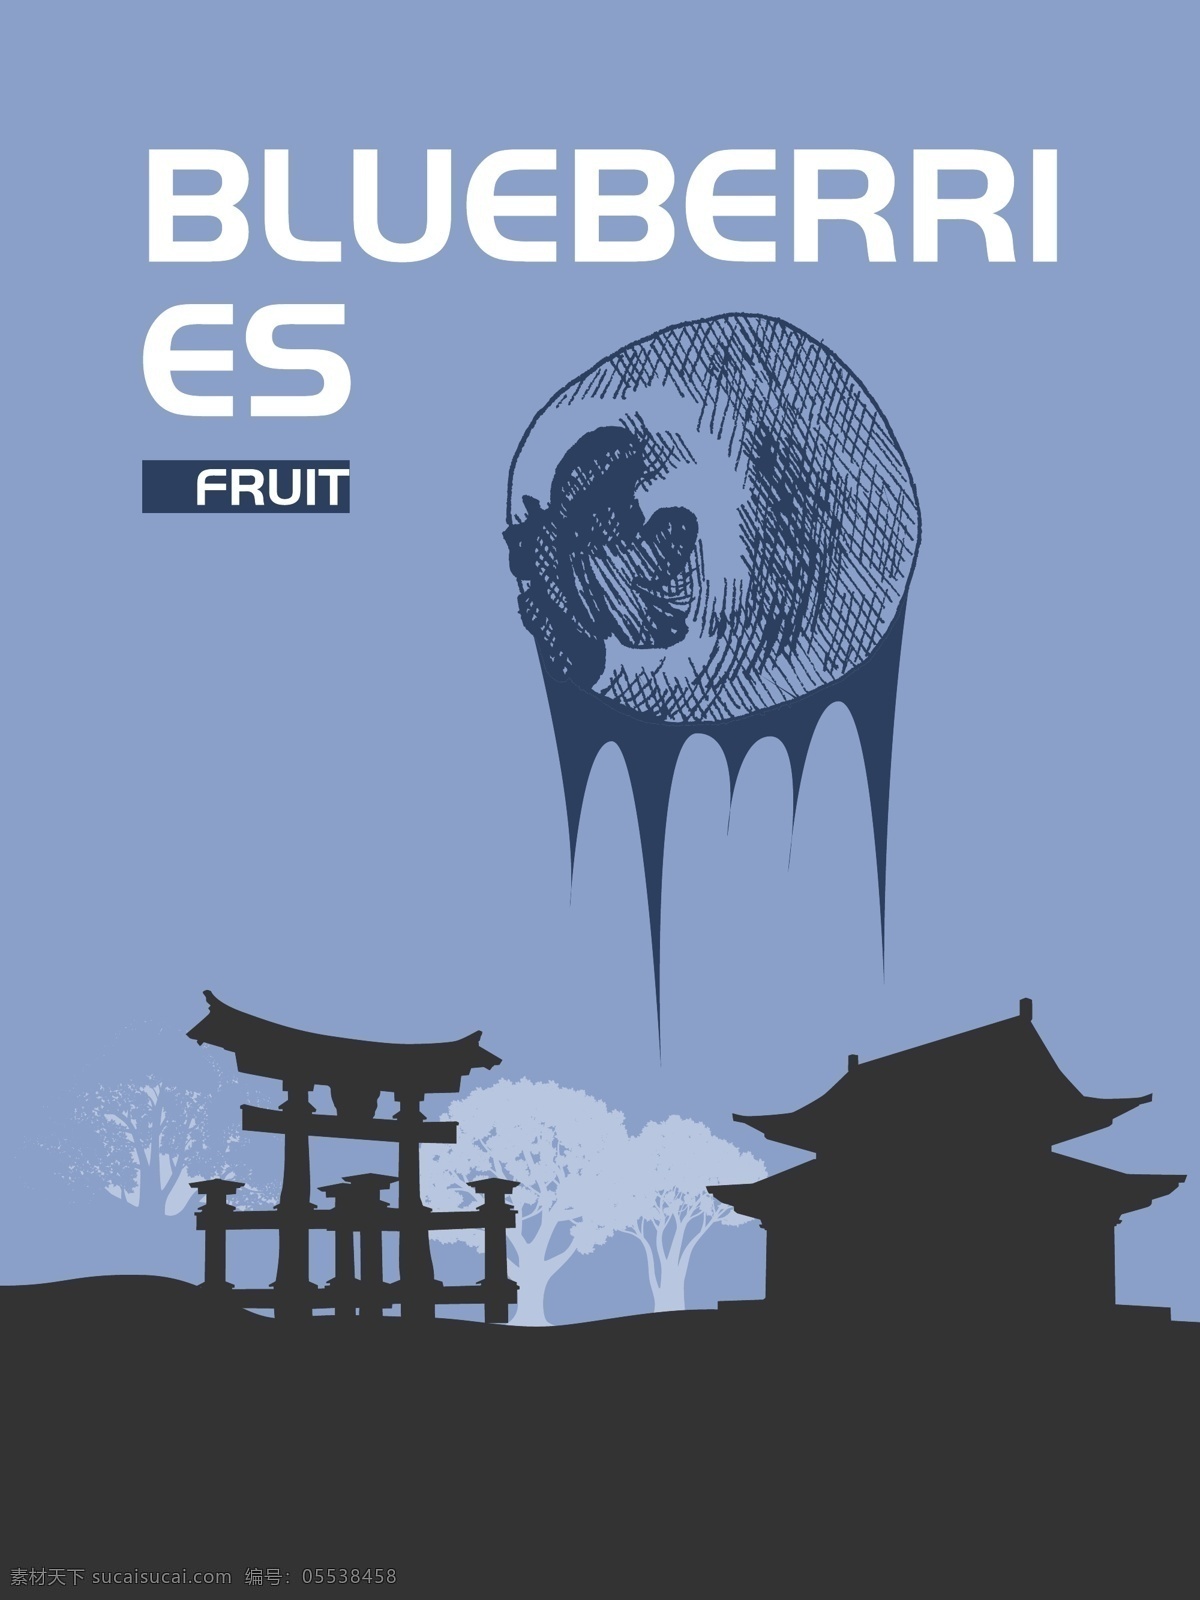 原创 食品 蓝莓 包装袋 水果 健康